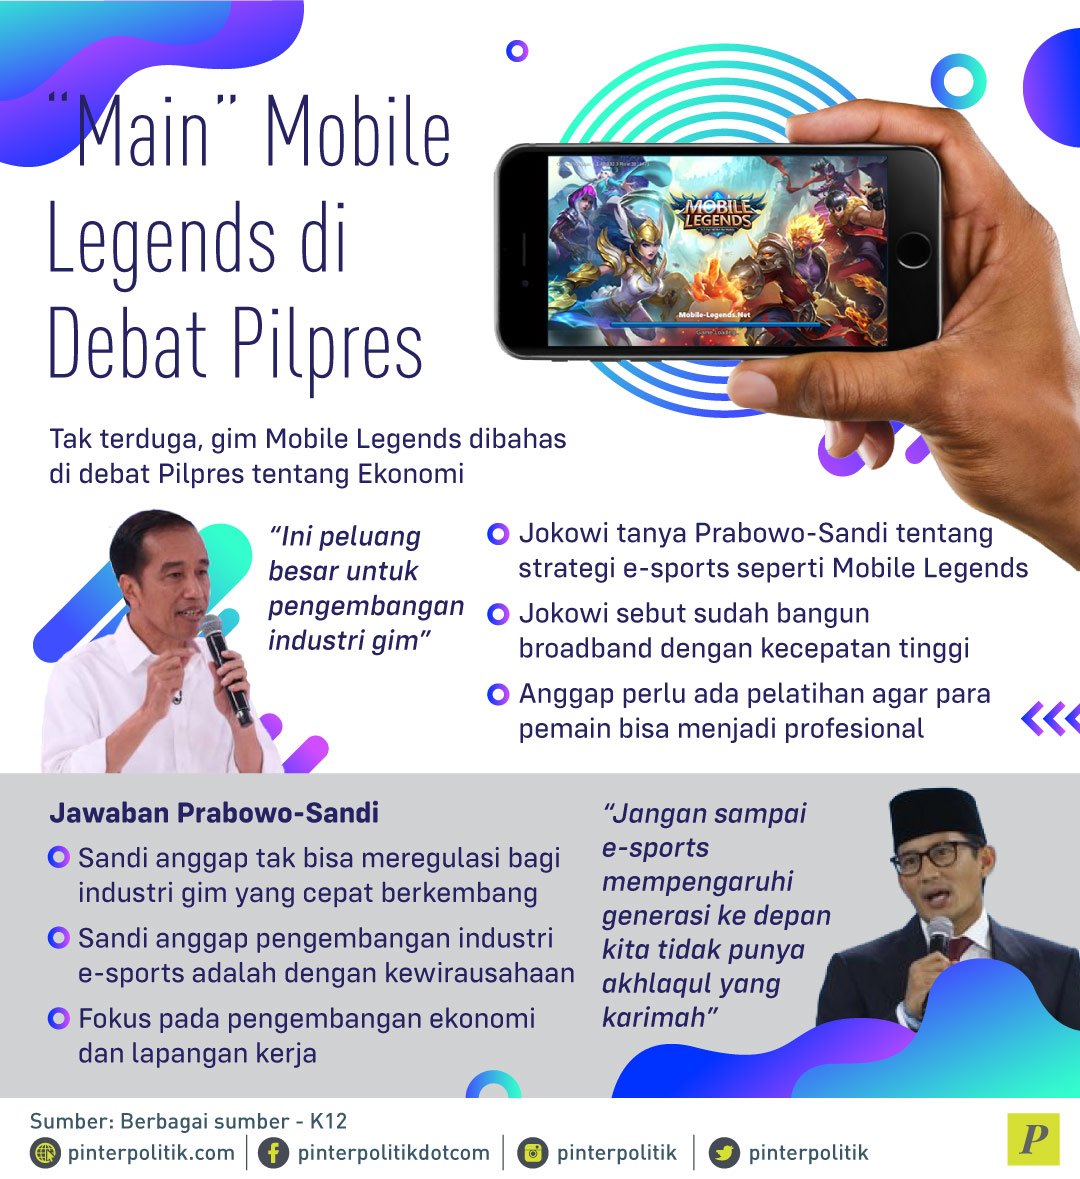 main mobile legends di debat Pilpres 2019